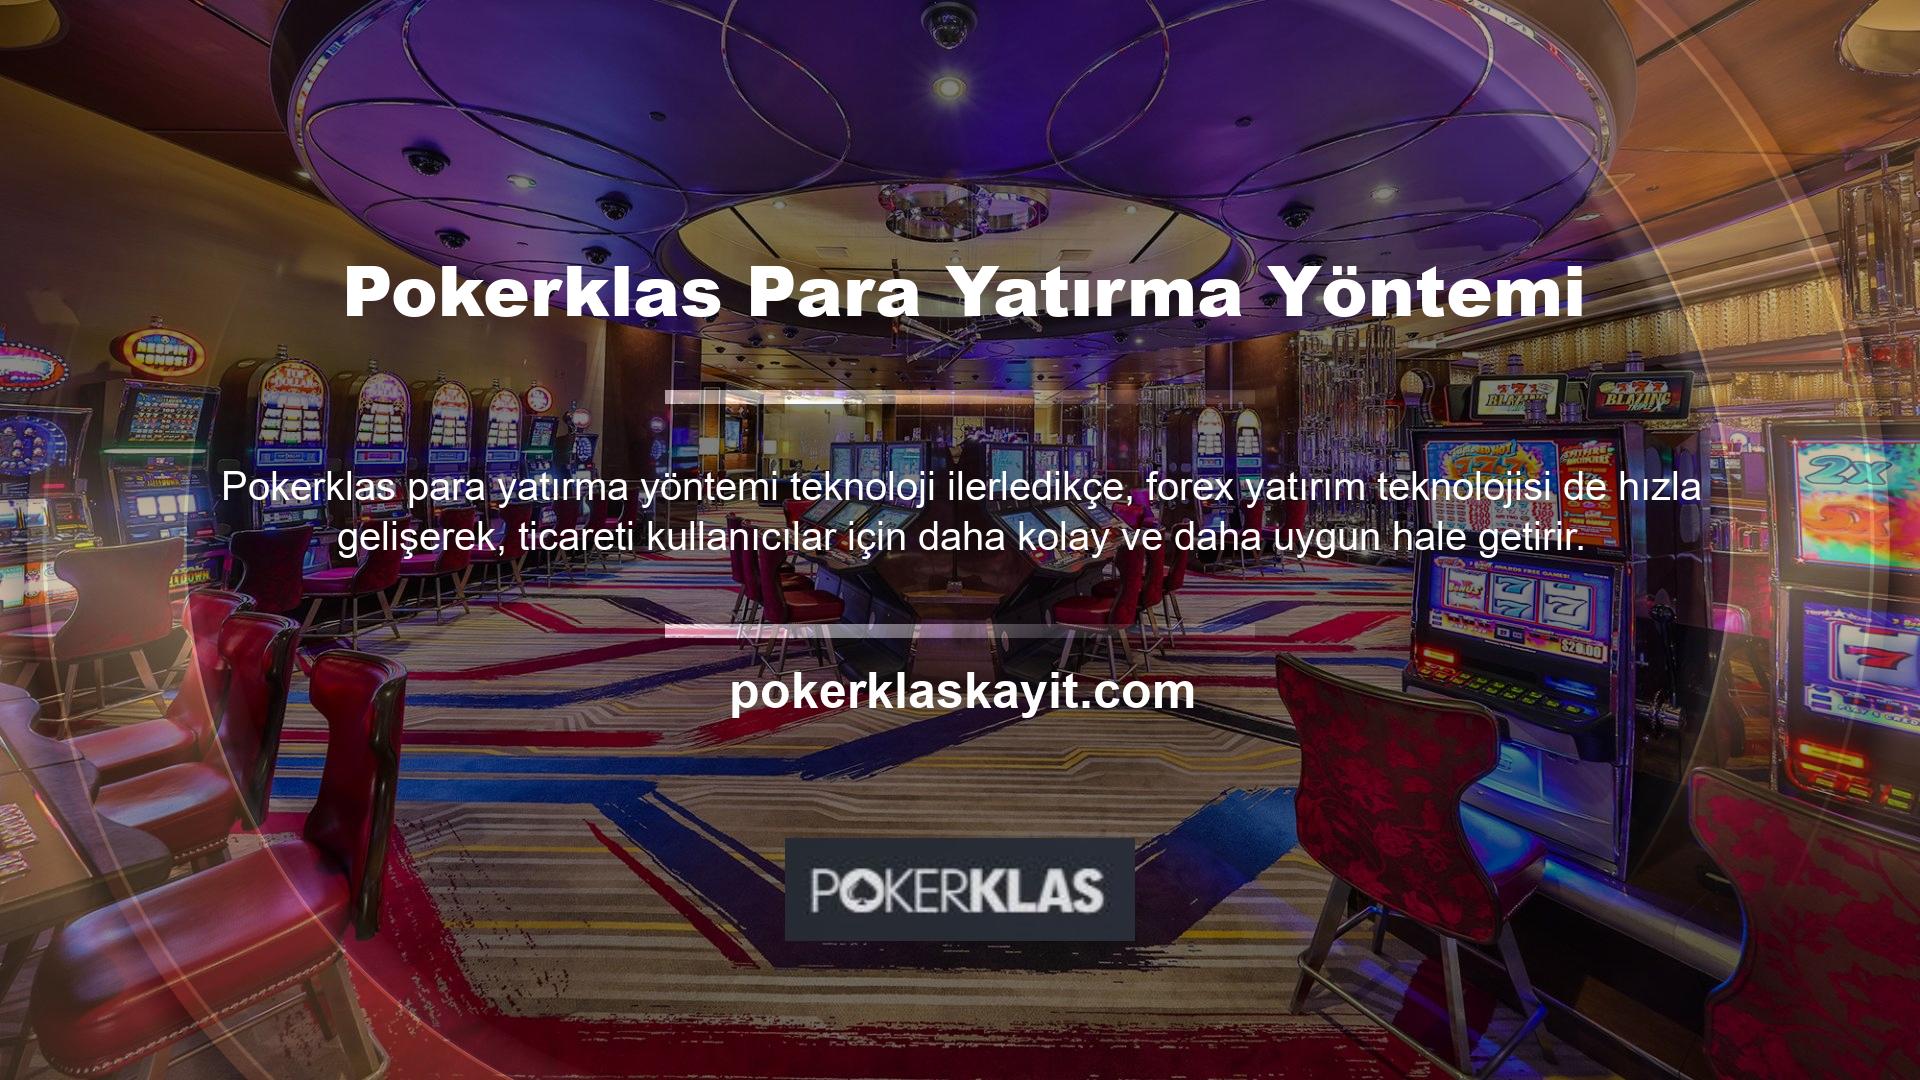 Pokerklas para yatırmak için öncelikle hesabınıza giriş yapmalısınız